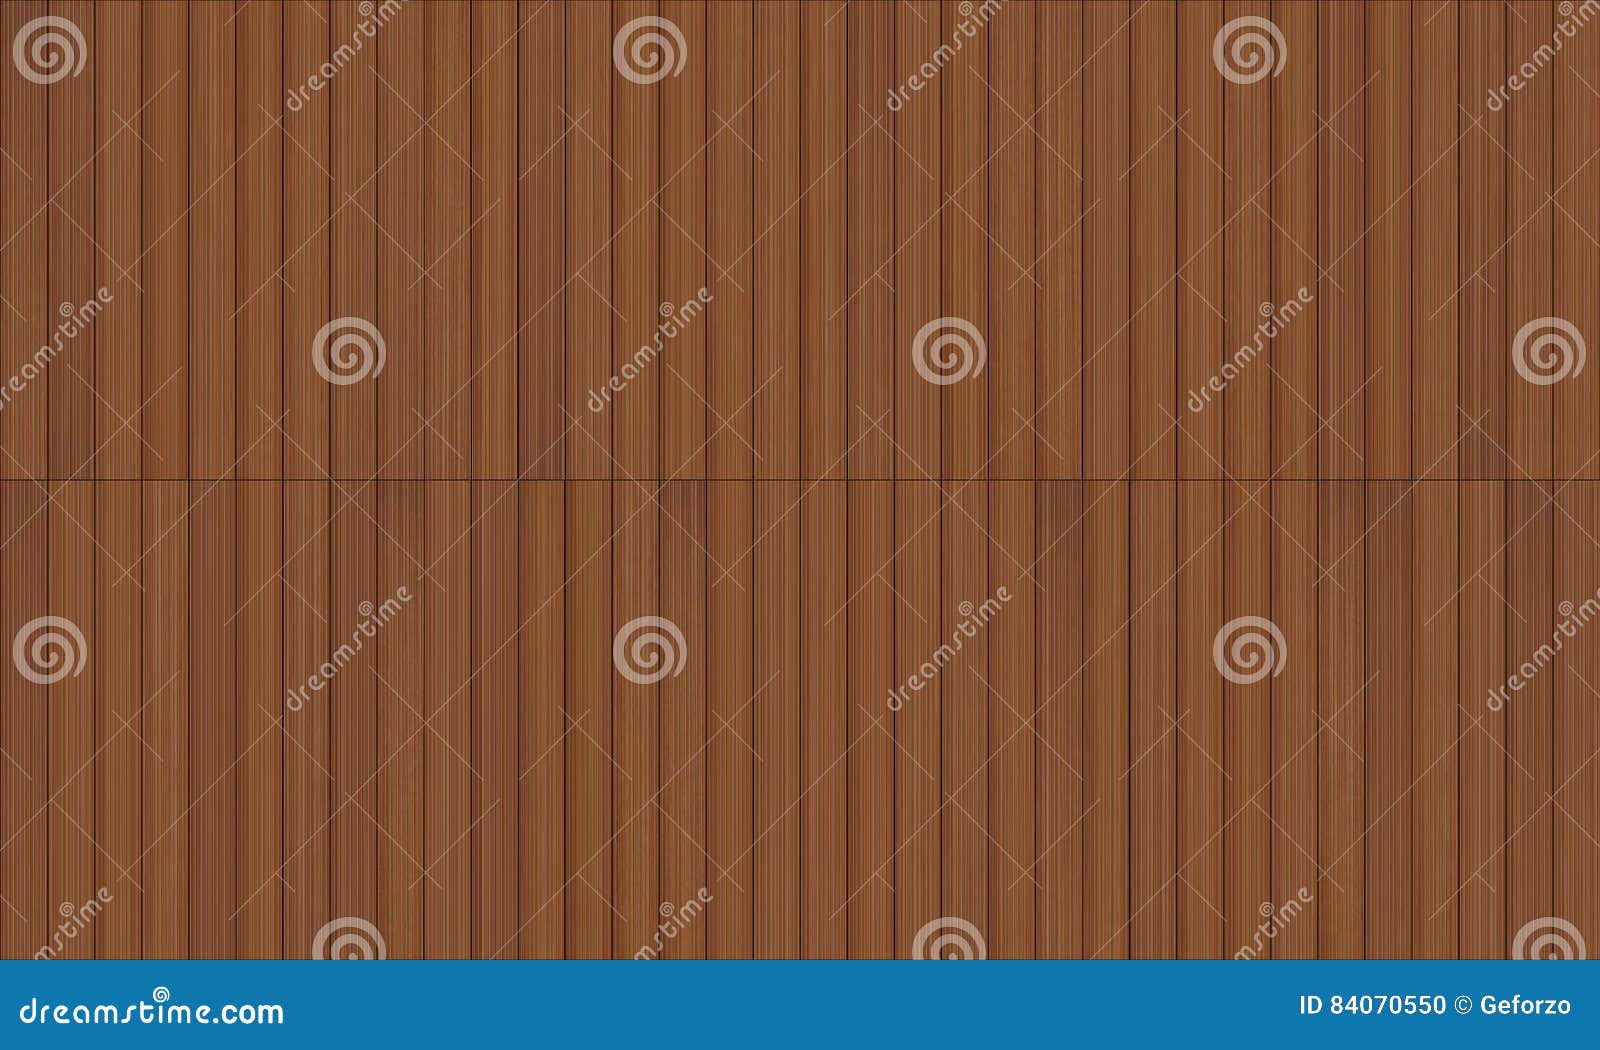 wooden decking seamless texture